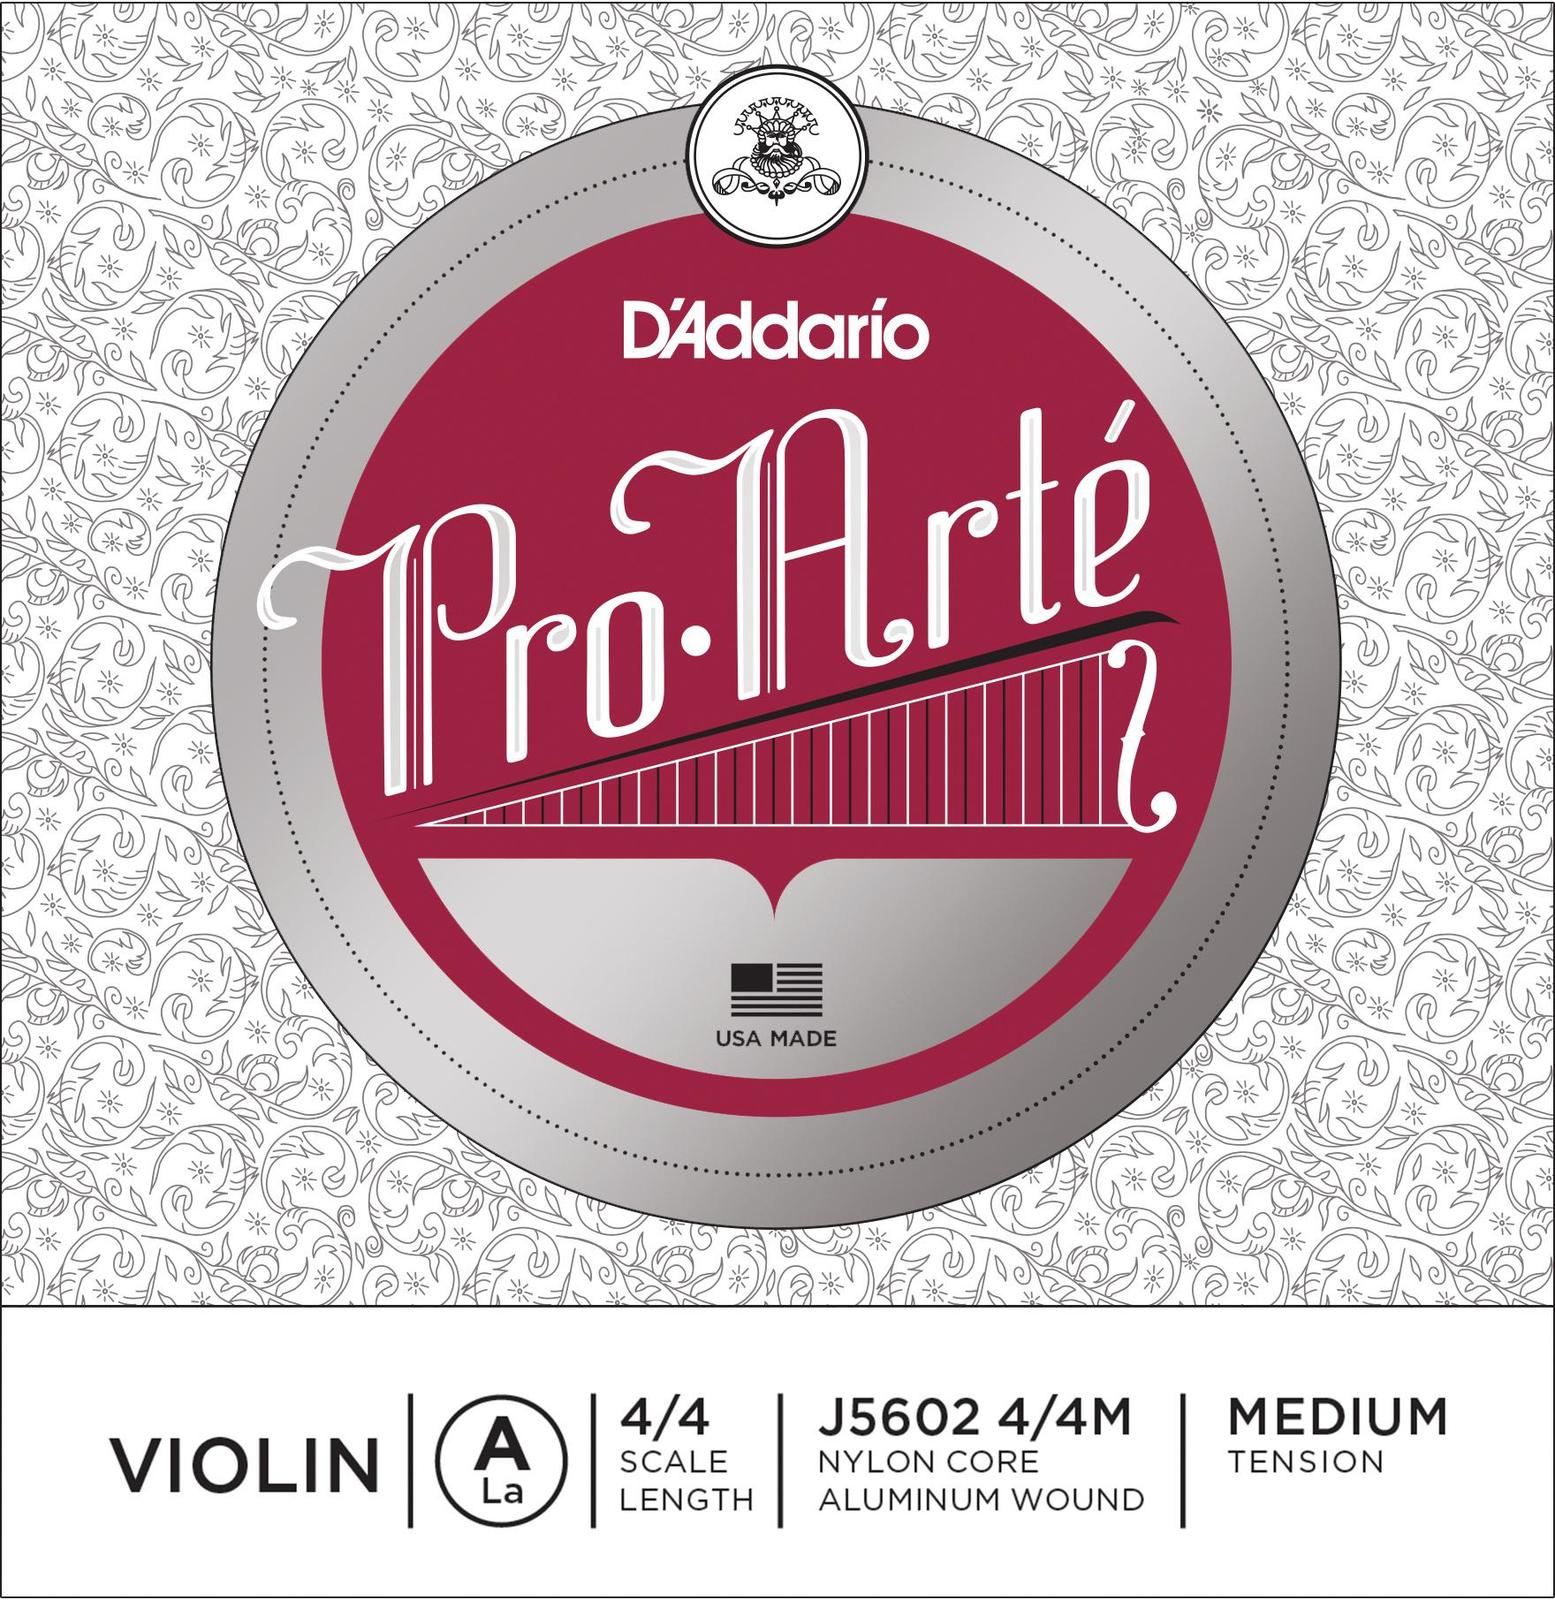 Medium Tension DAddario Prelude Violin Single A String 4/4 Scale 